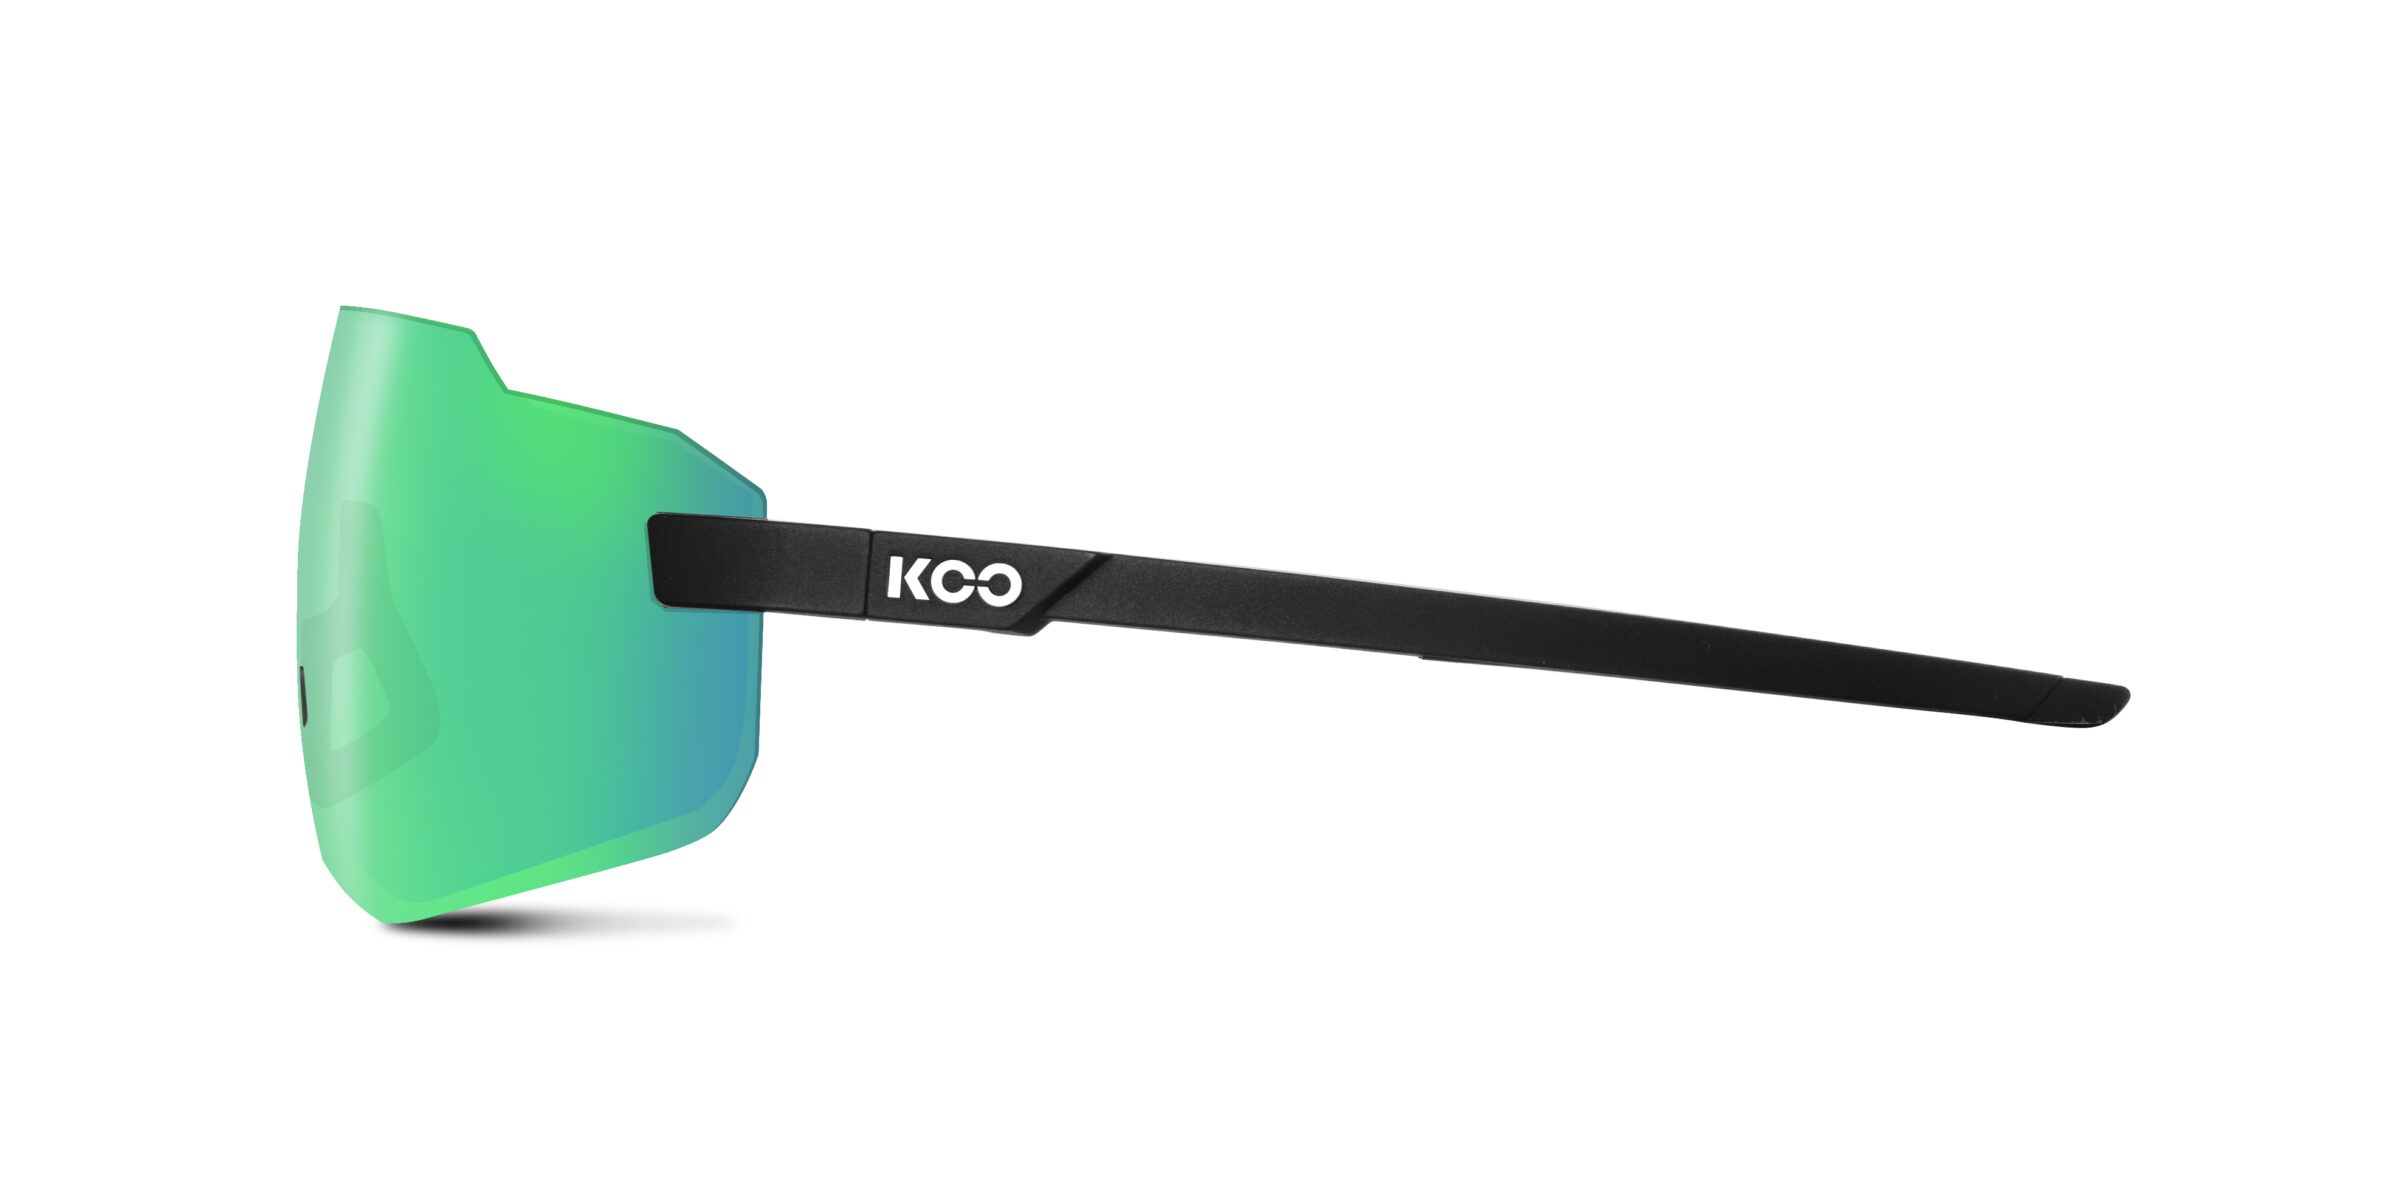 Beklædning - Cykelbriller - KOO Supernova Cykelbrille - Sort/grøn